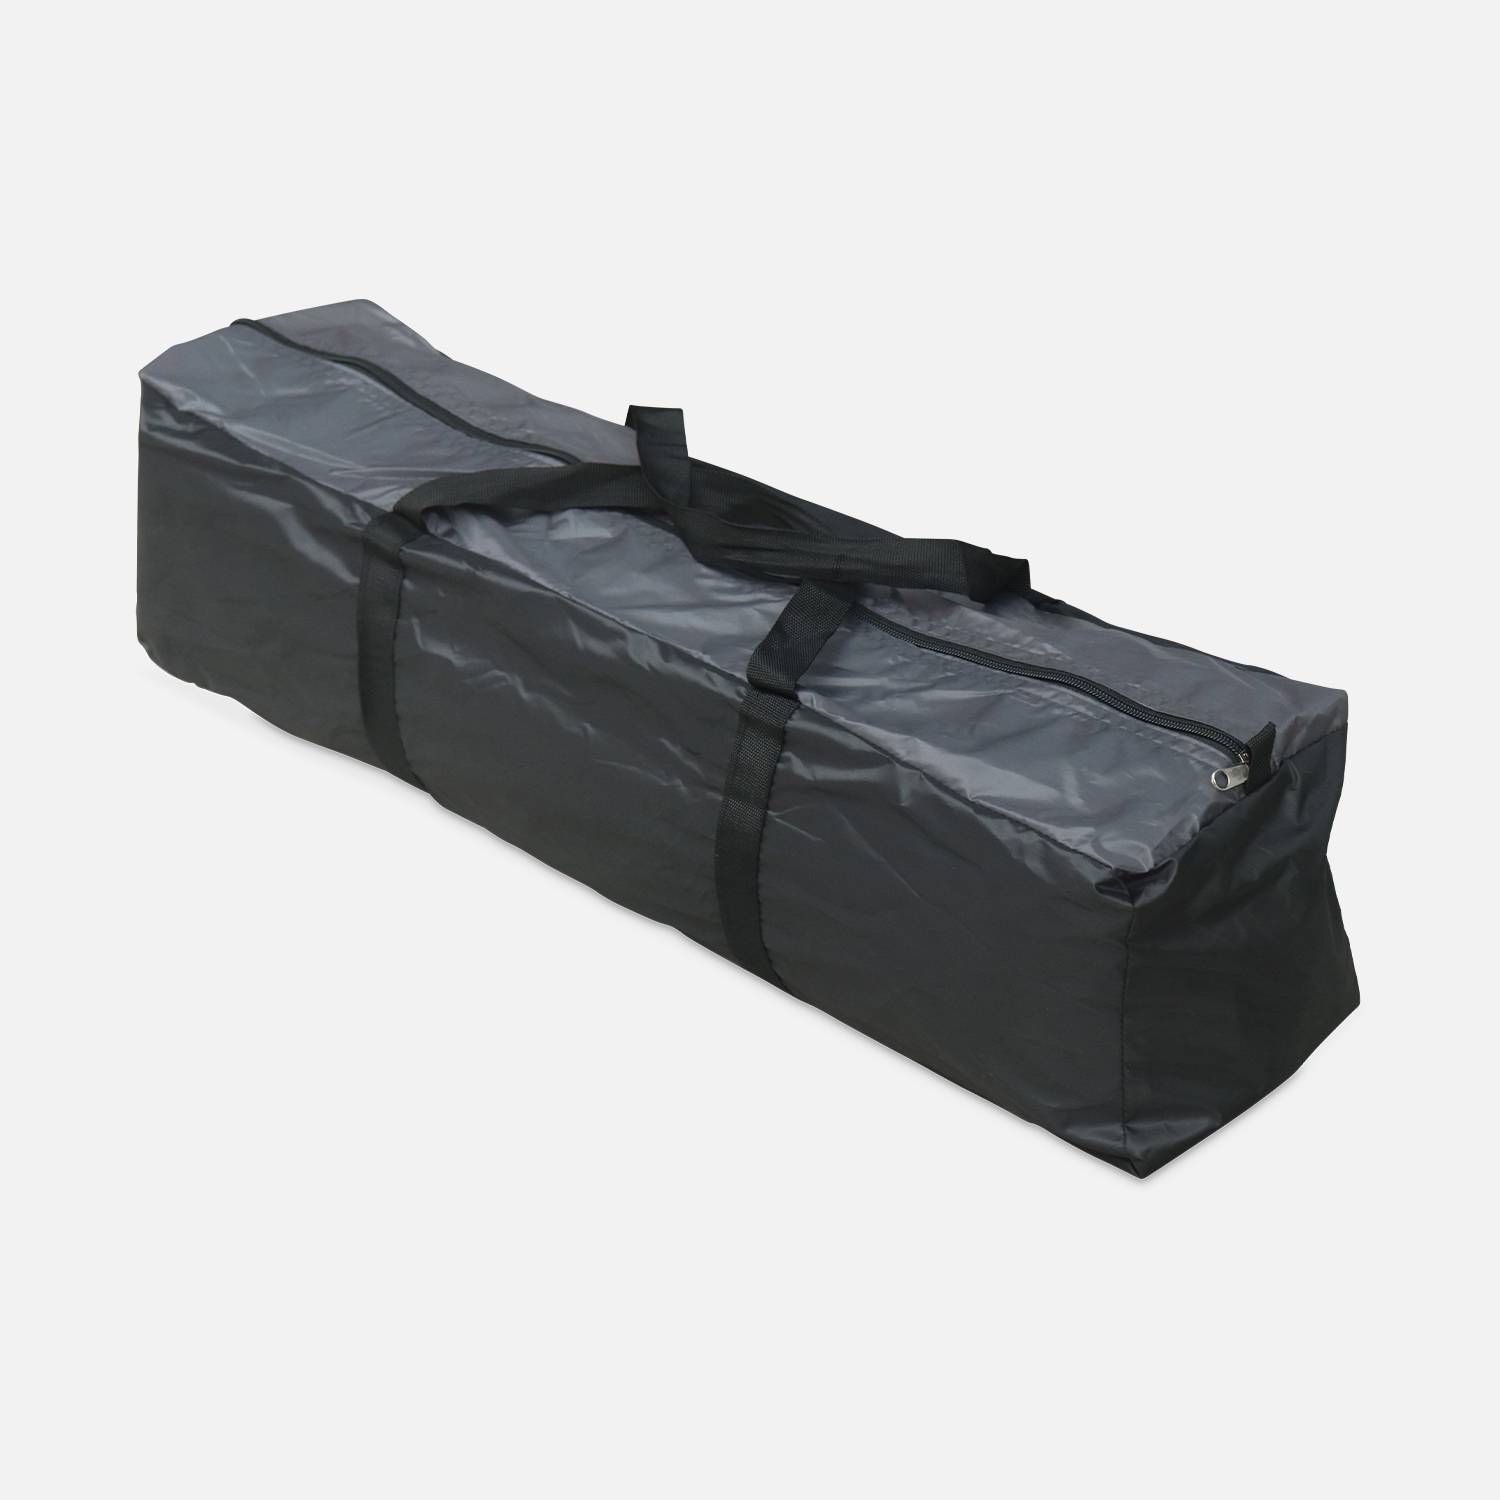 Carpa para cama elástica Ø490cm (red interior y exterior) poliéster, tratamiento UV, 2 puertas, 4 ventanas y bolsa de transporte Photo7